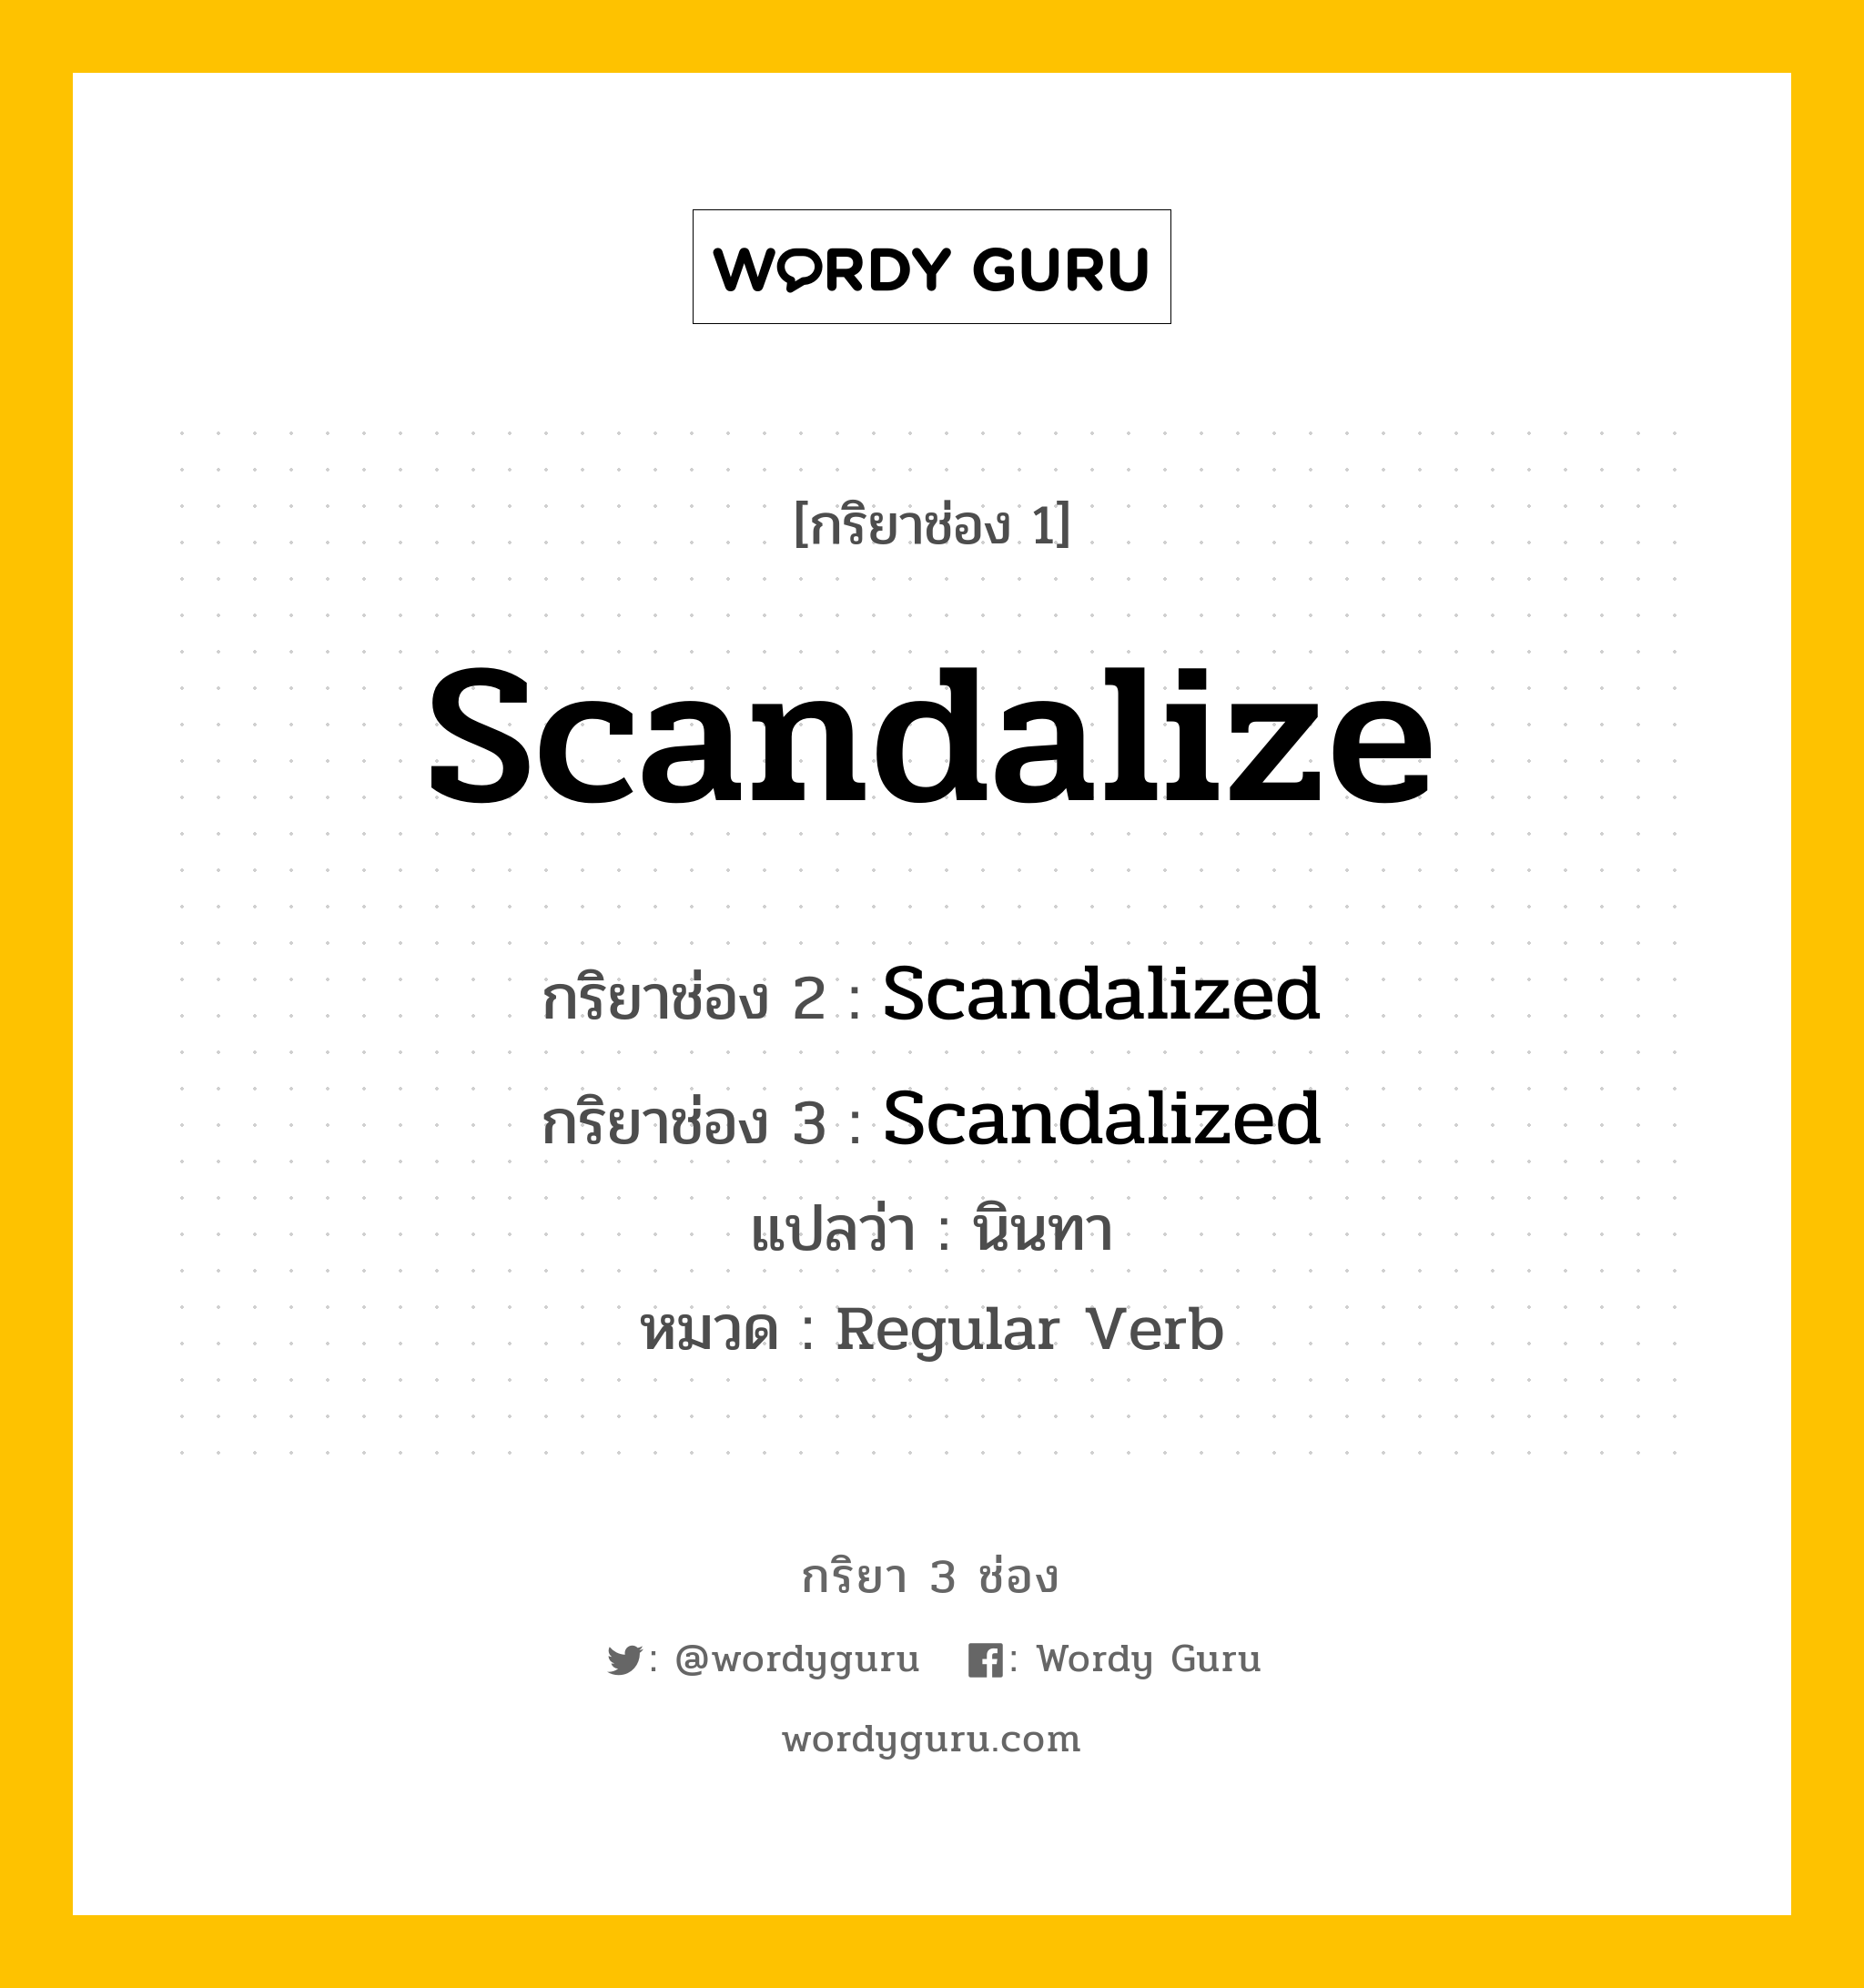 กริยา 3 ช่อง ของ Scandalize คืออะไร? มาดูคำอ่าน คำแปลกันเลย, กริยาช่อง 1 Scandalize กริยาช่อง 2 Scandalized กริยาช่อง 3 Scandalized แปลว่า นินทา หมวด Regular Verb หมวด Regular Verb